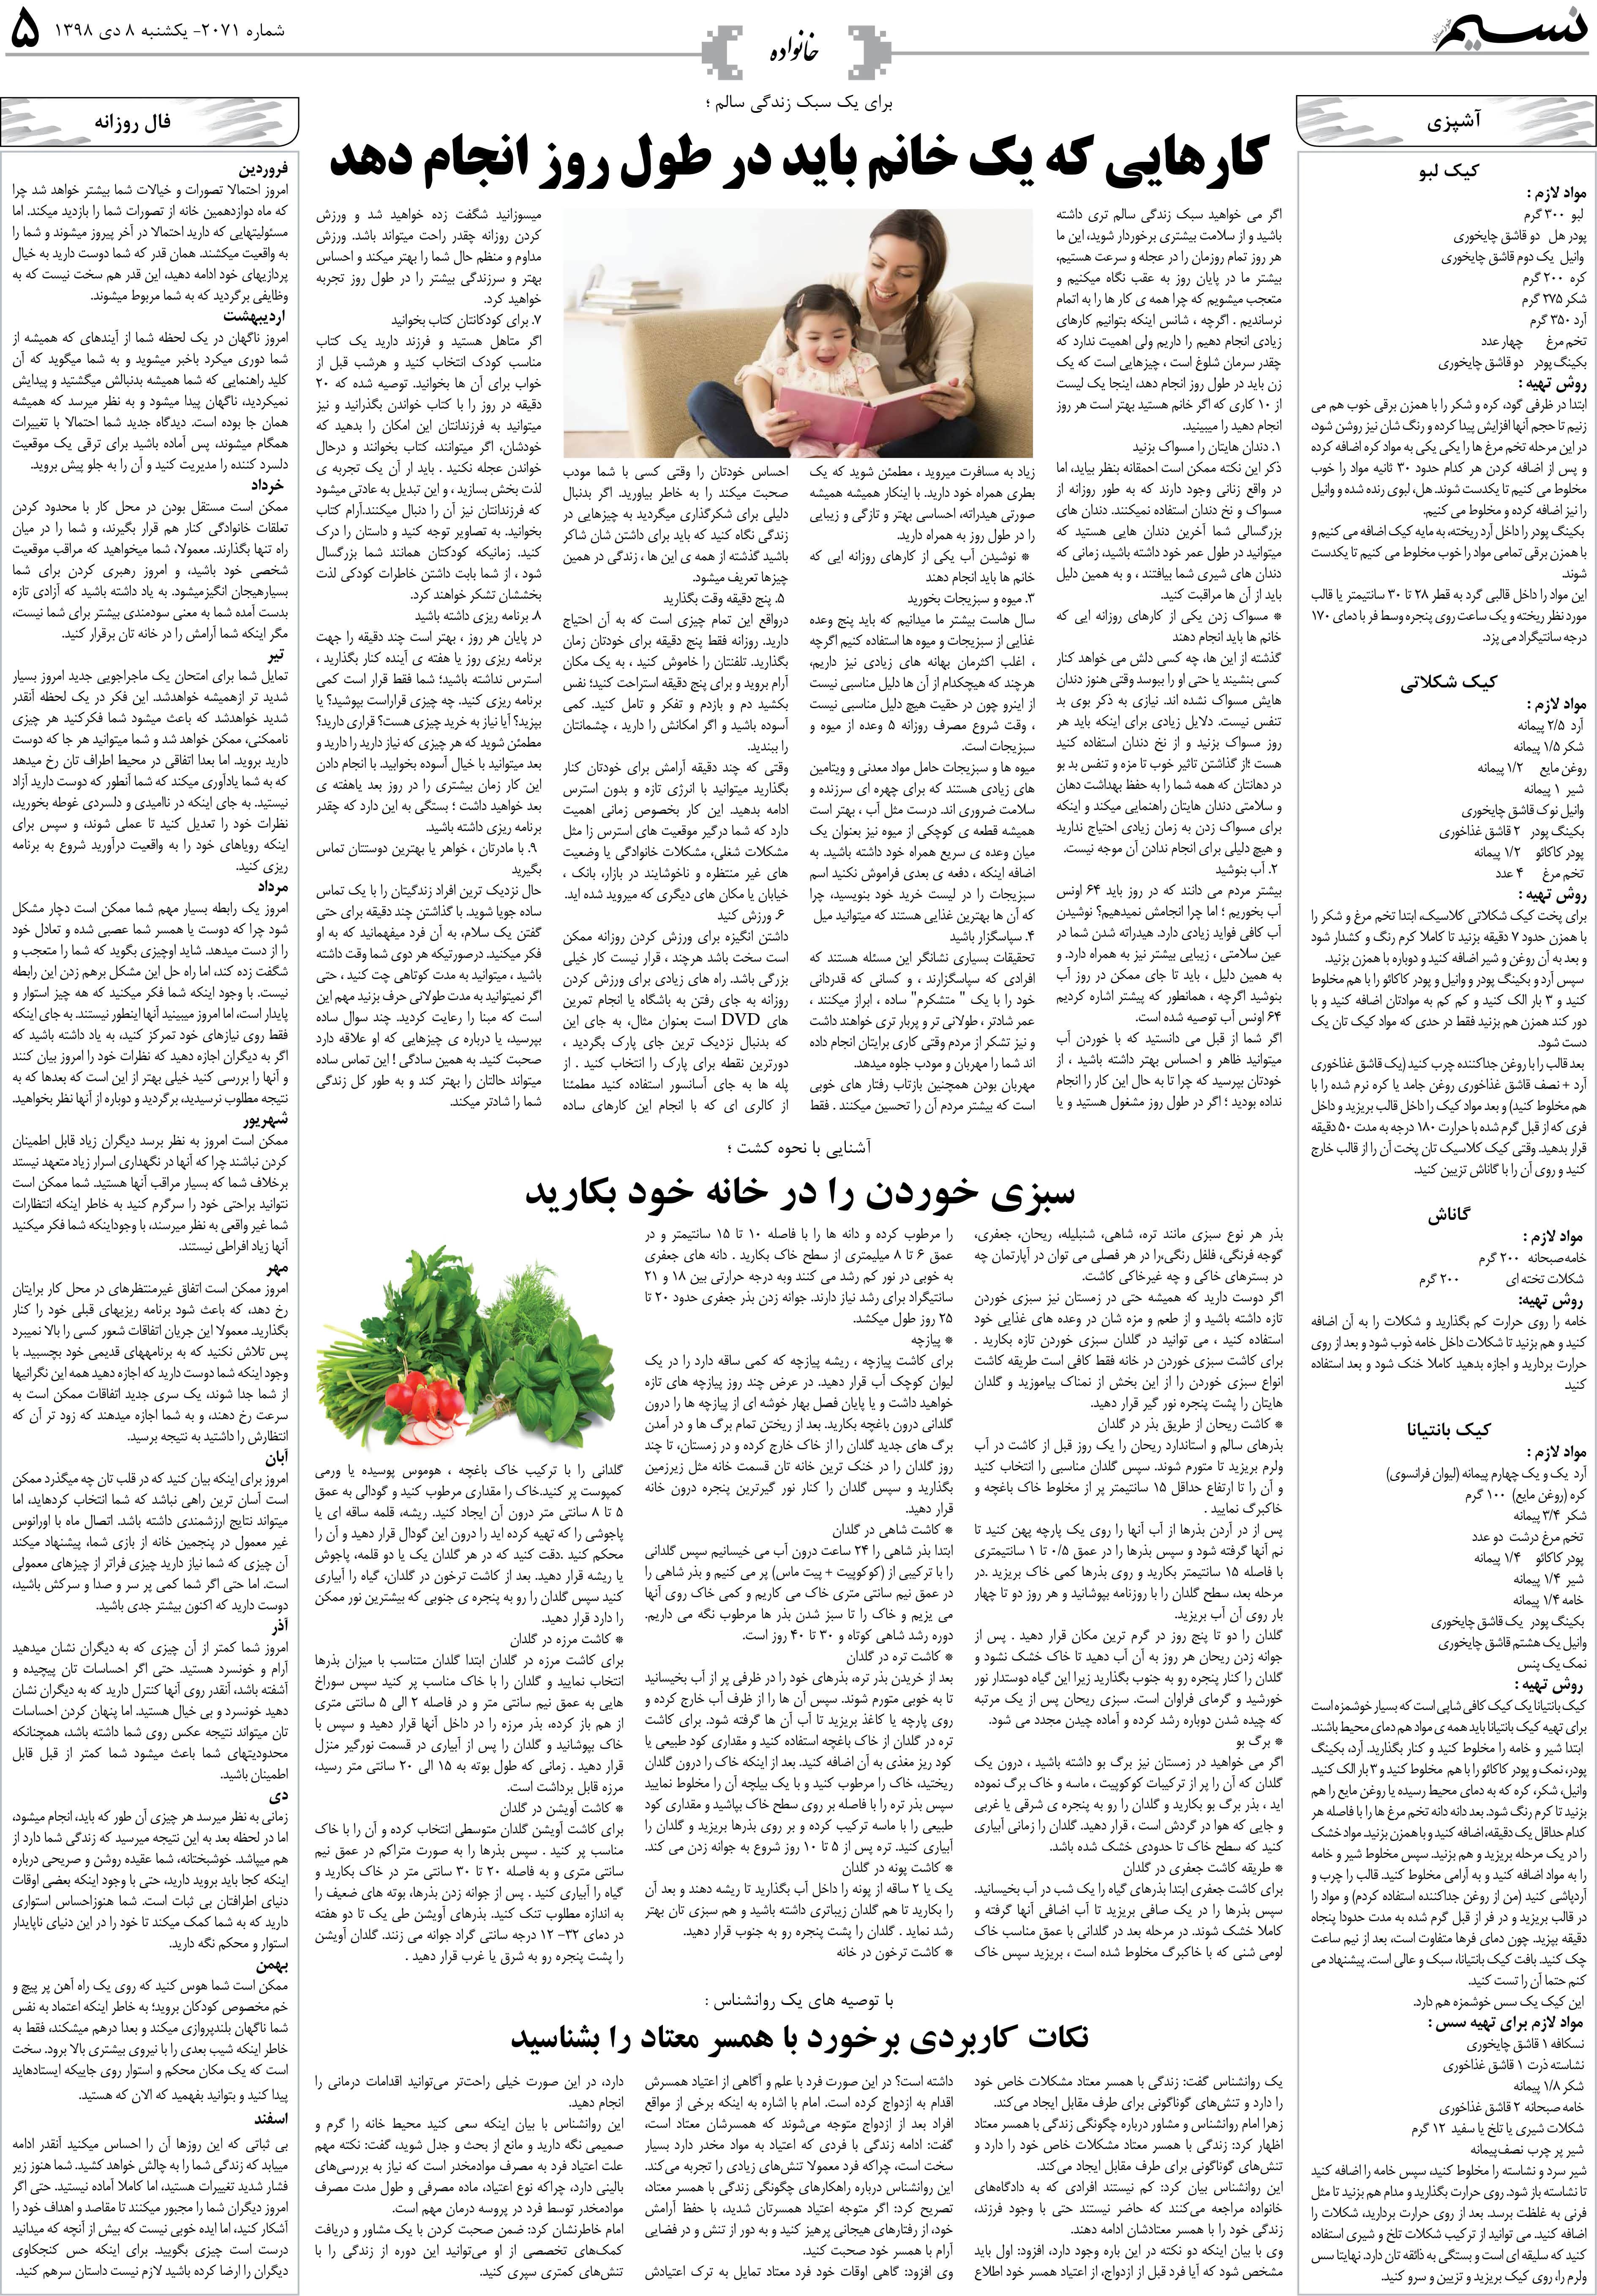 صفحه خانواده روزنامه نسیم شماره 2071